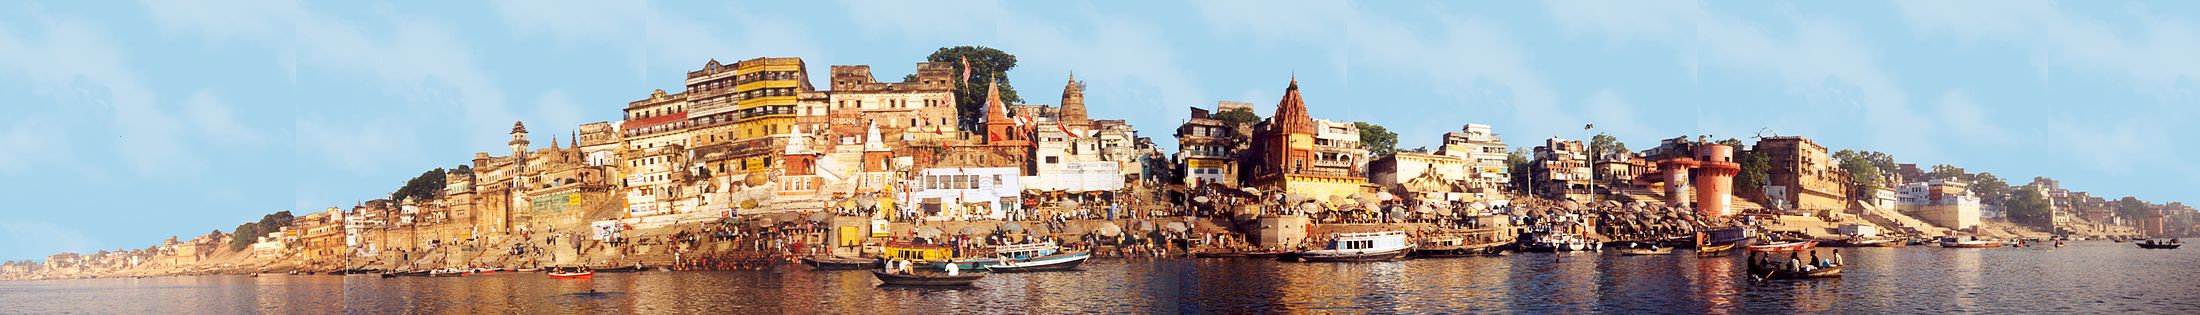 Városkép a Gangesz folyó partján